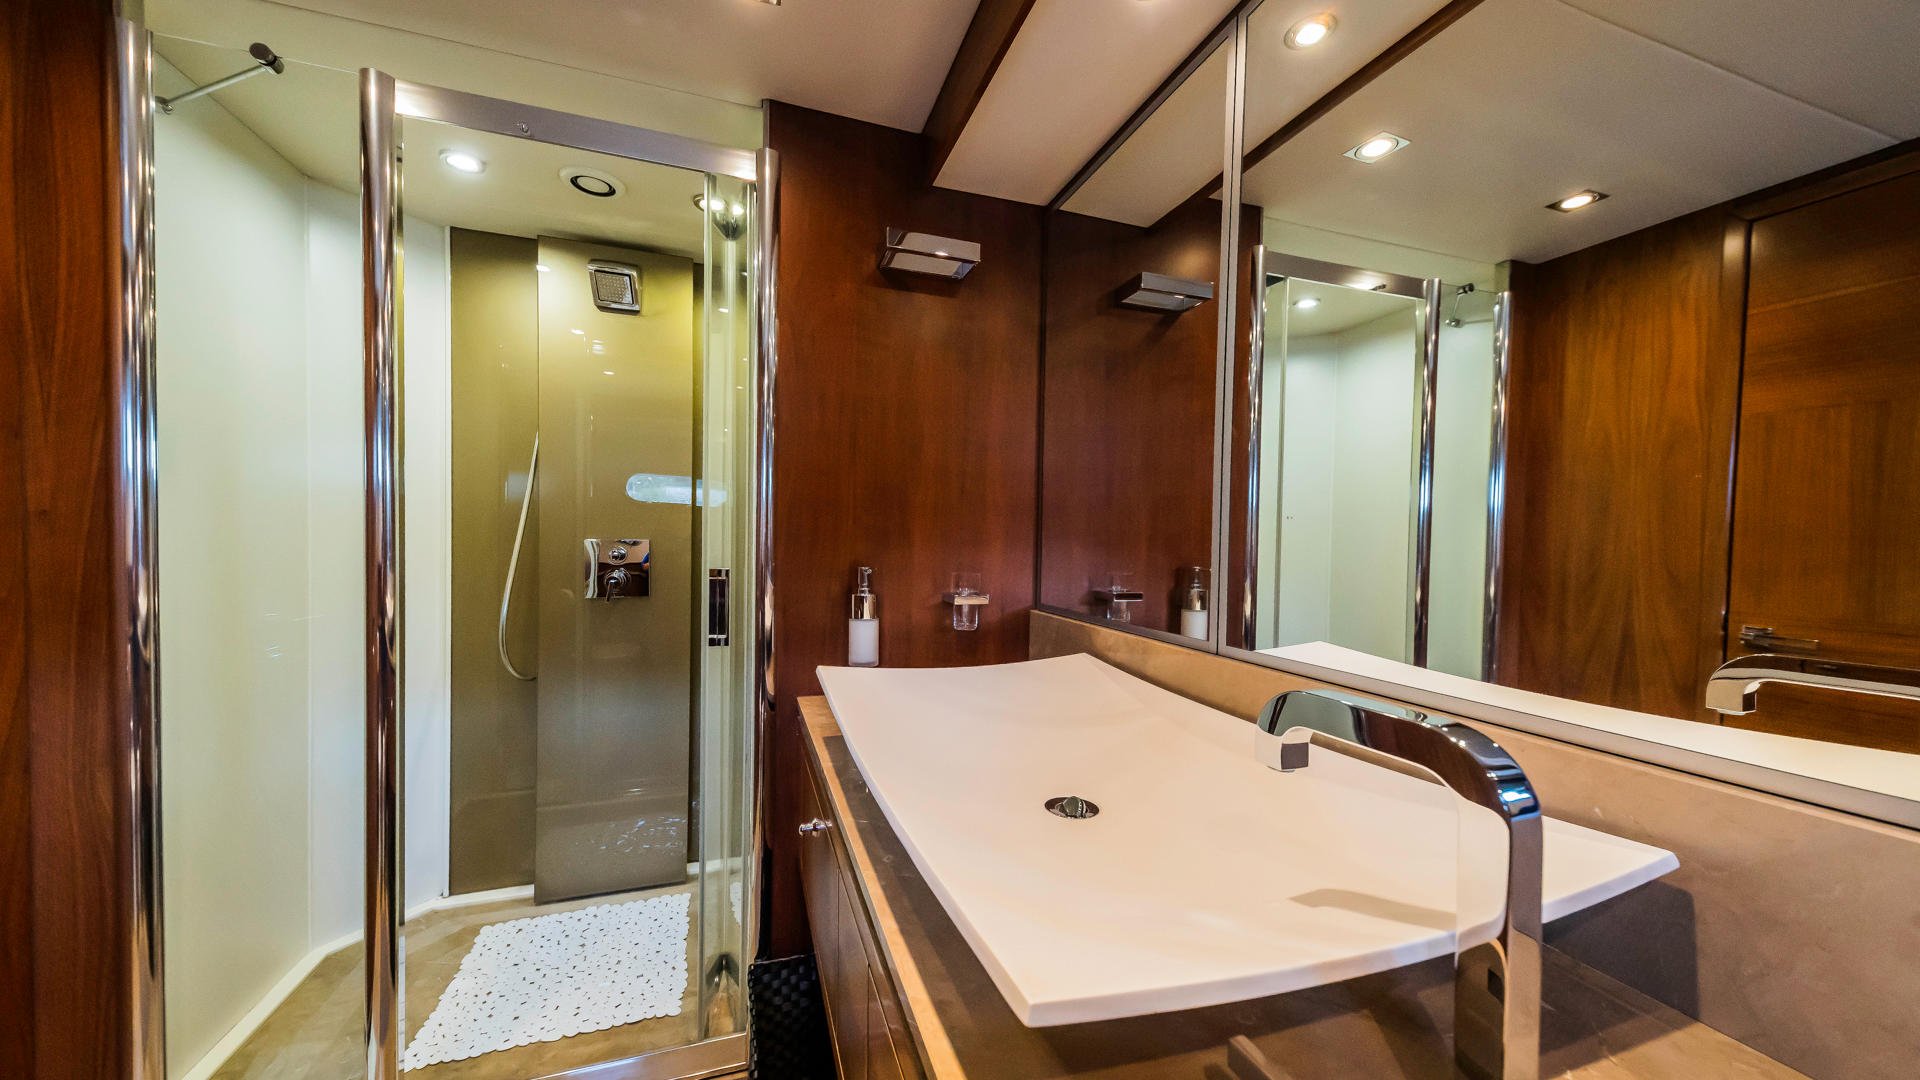 26-The-best-way-Master bathroom-shower-view.JPG